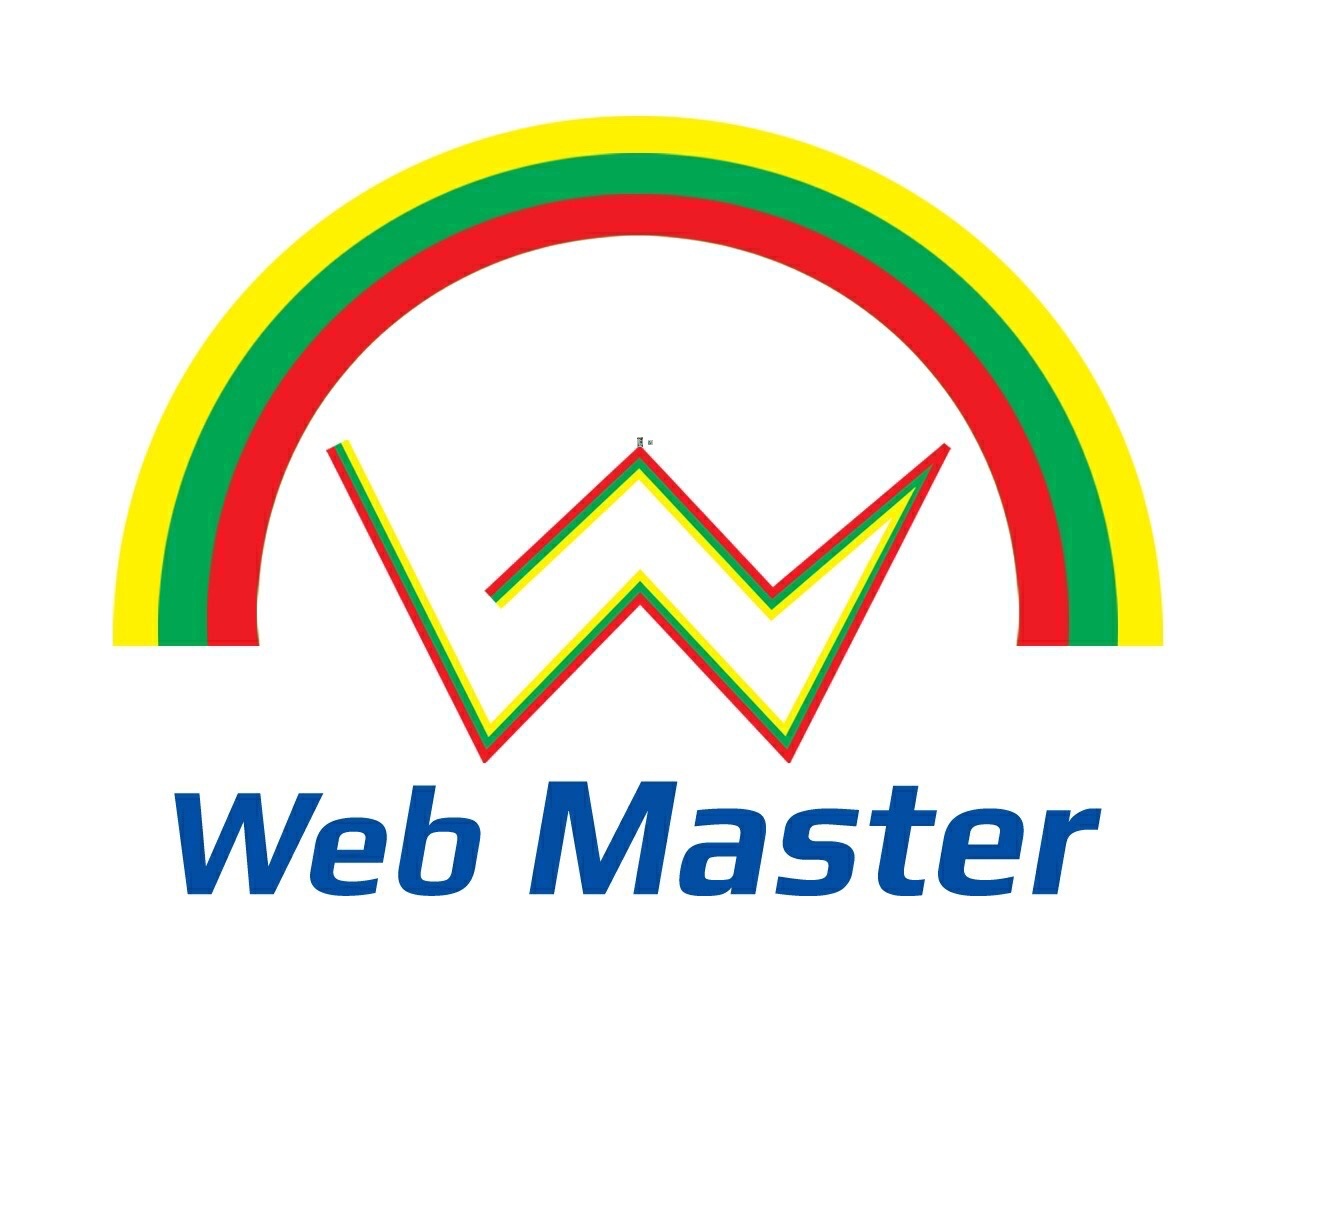 Web Master Company